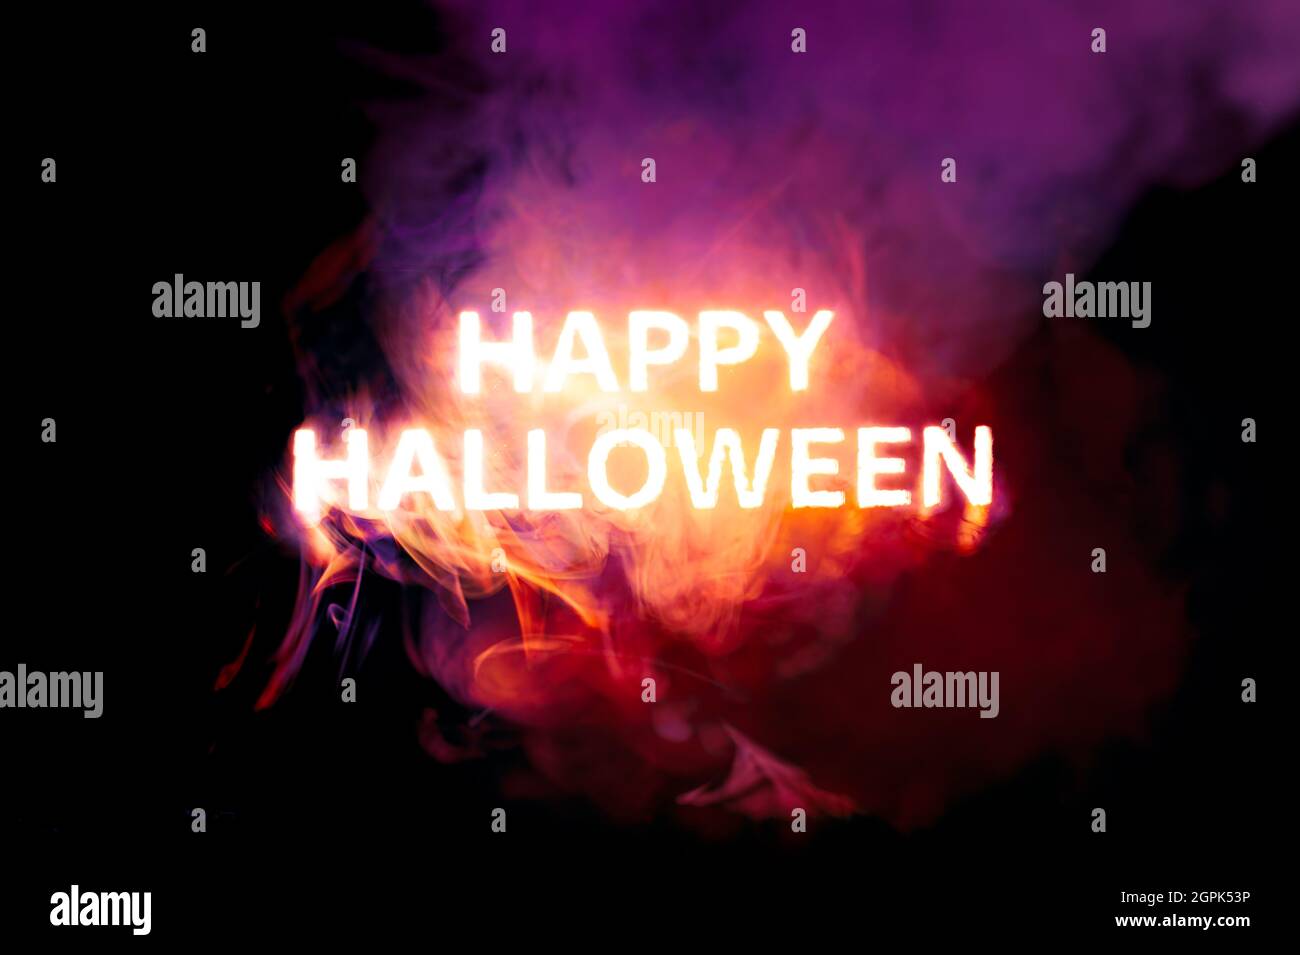 Texte brillant heureux Halloween brûlant rouge, orange, et violet fumée Banque D'Images